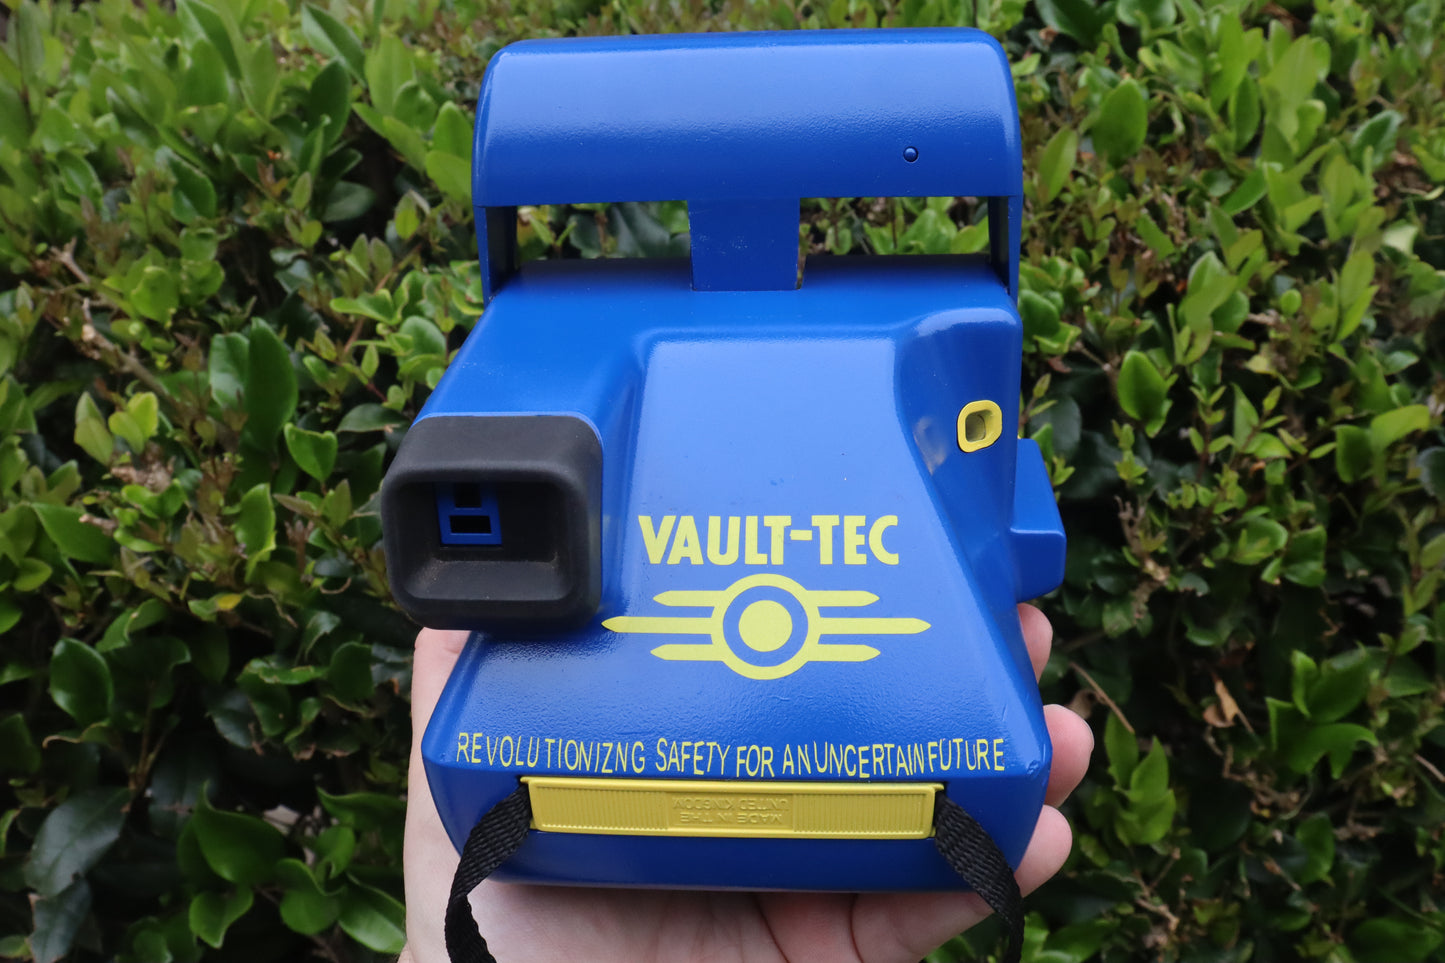 Fallout Polaroid Camera